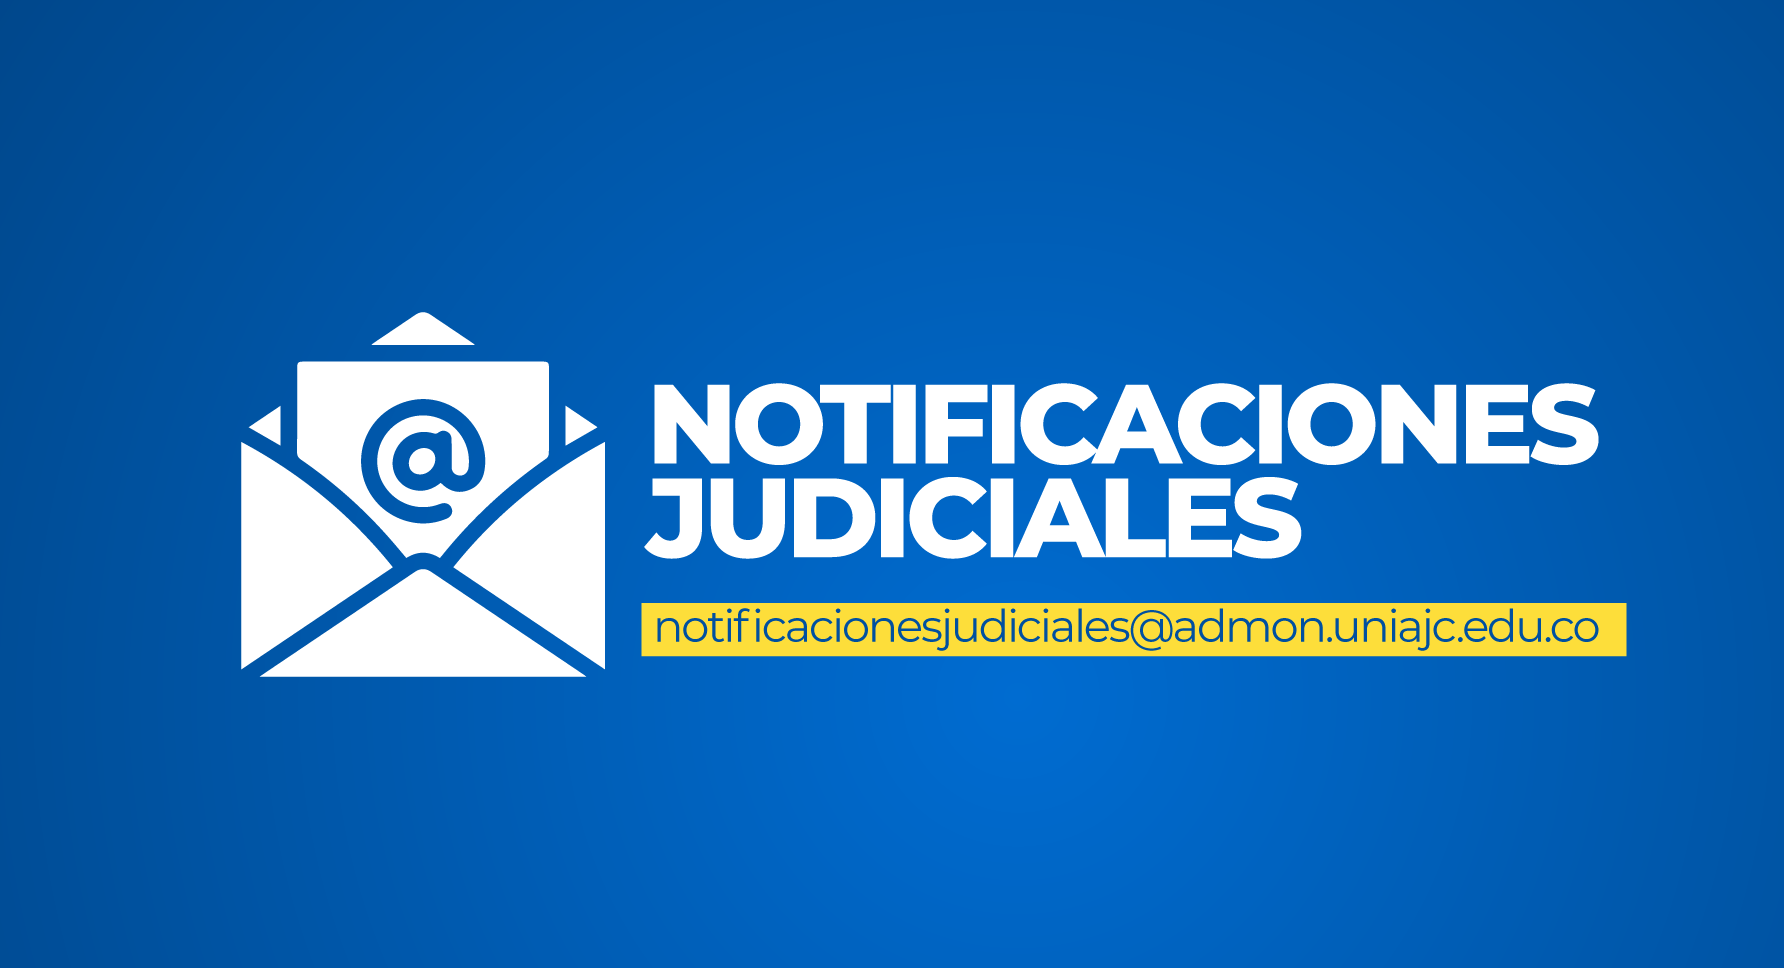 Notificaciones Judiciales